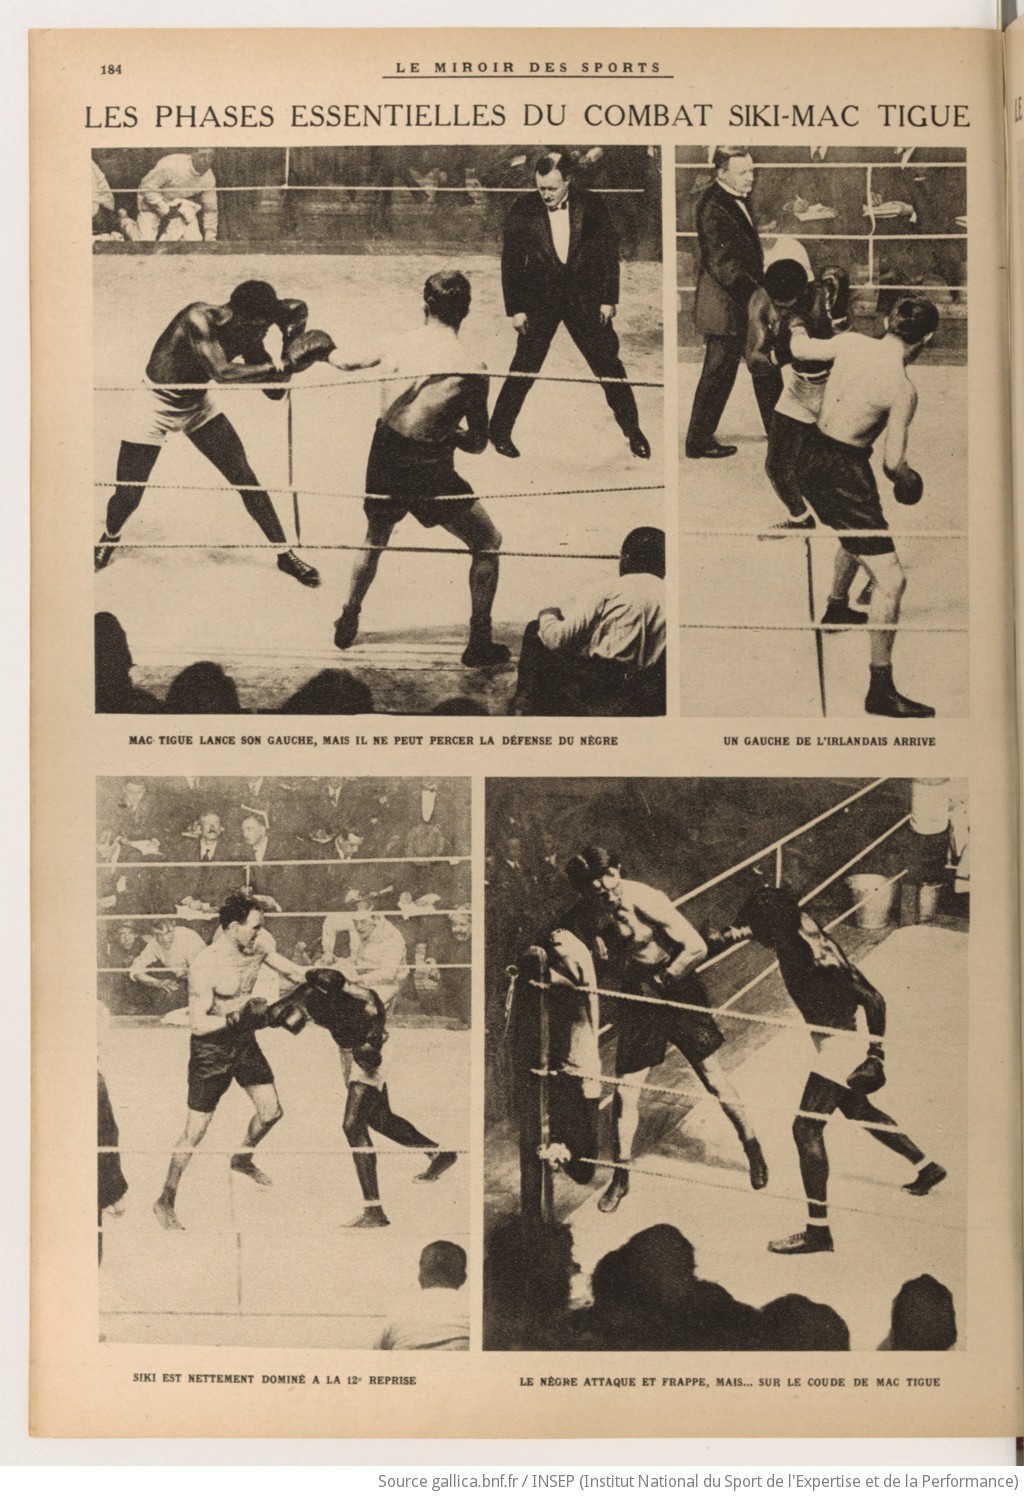 Le Miroir des sports : publication hebdomadaire illustrée - View 8 - Page 184